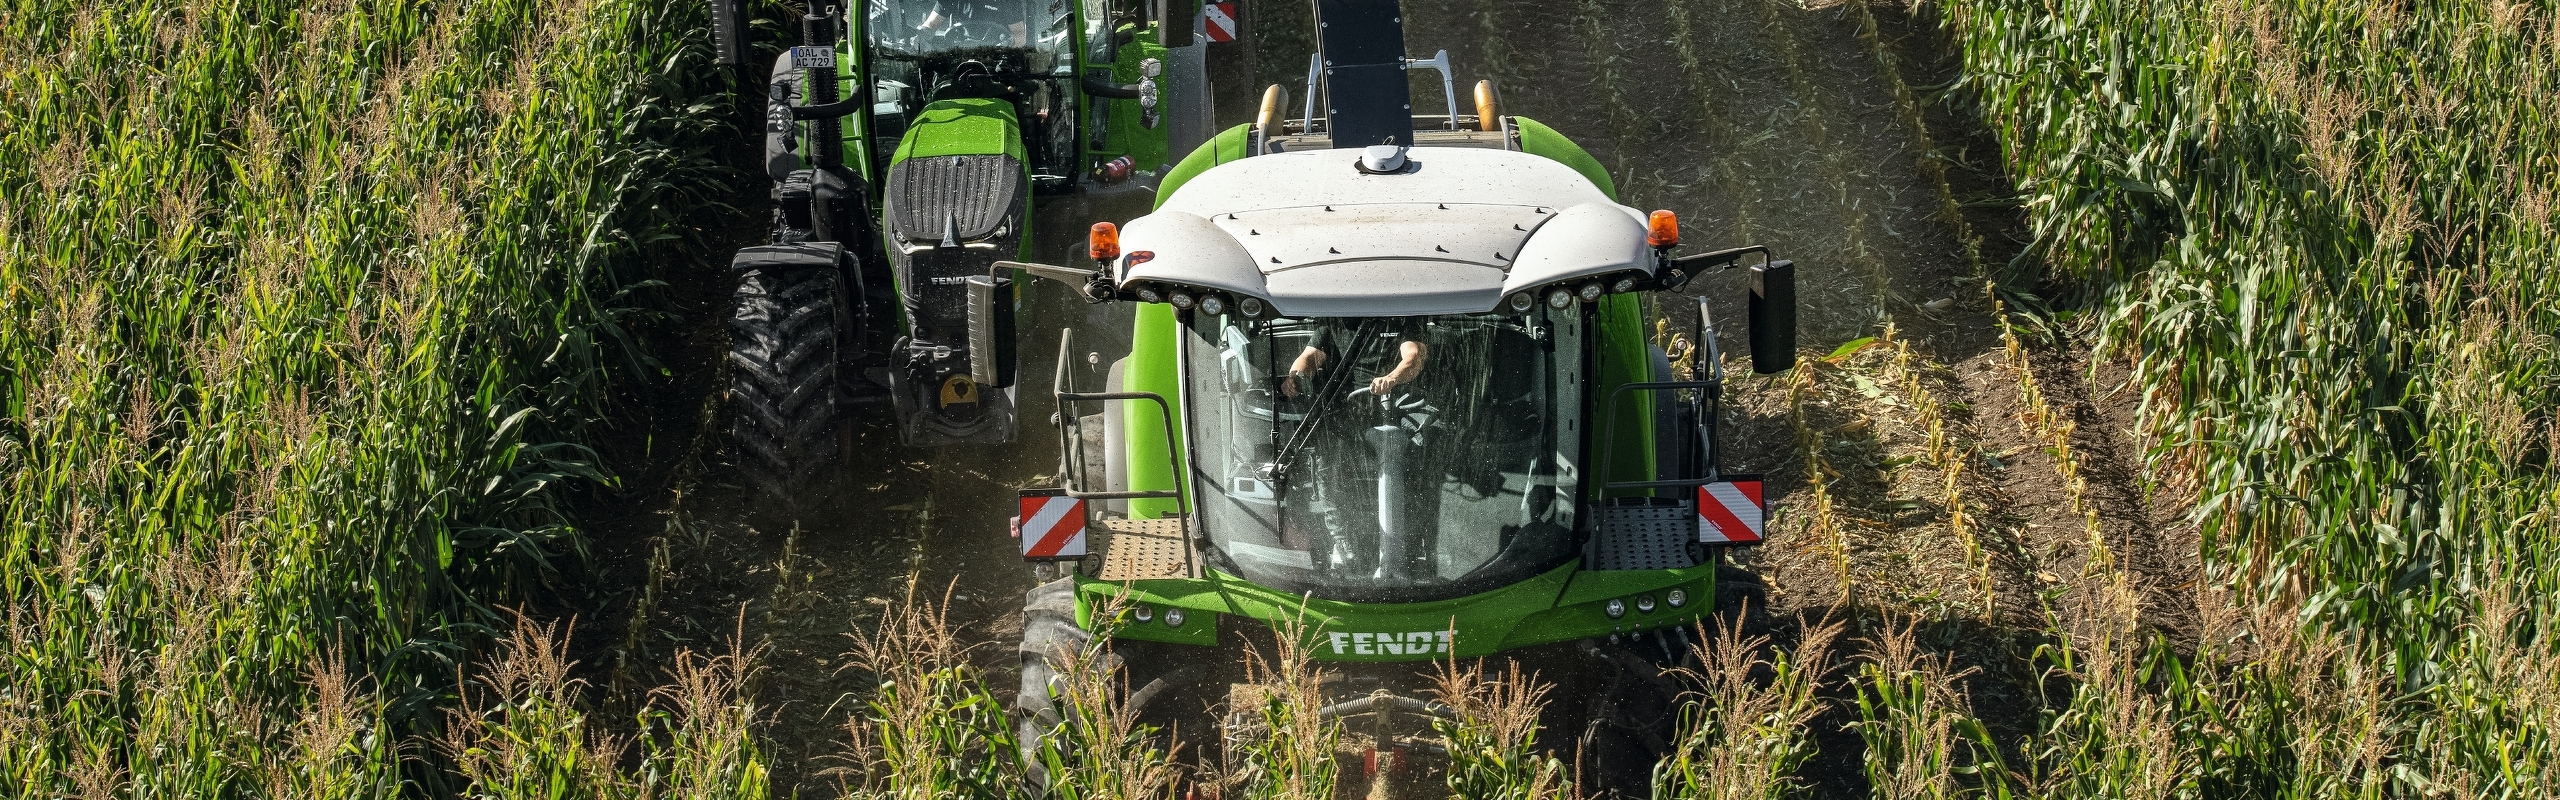 Fendt Katana egy Fendt traktor mellett egy kukoricaföldön madártávlatból